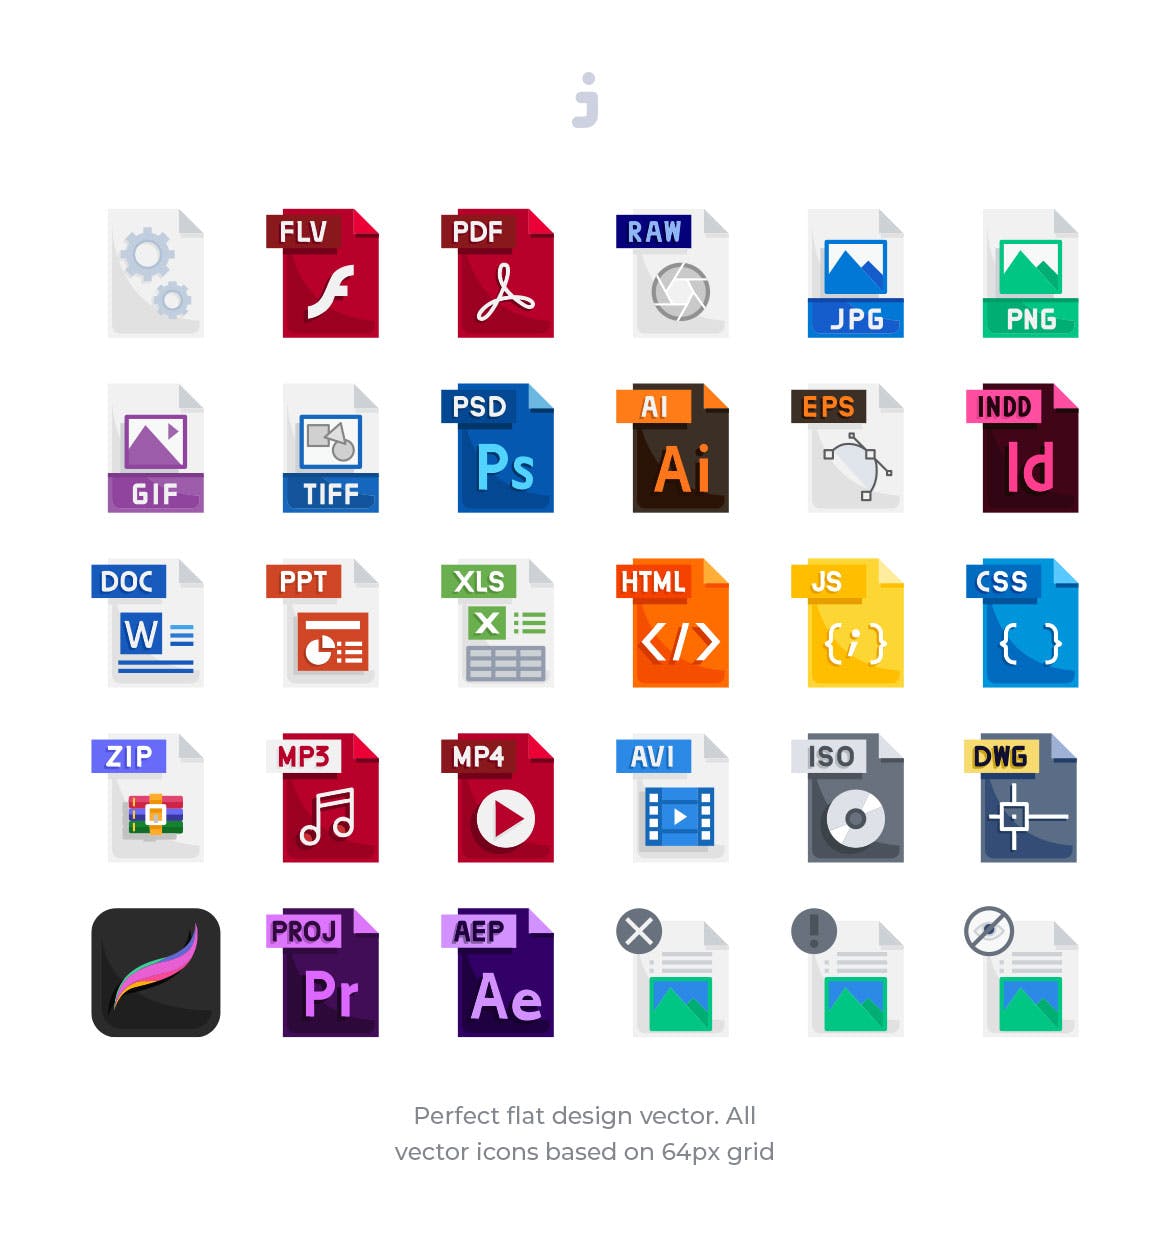 30种文件格式扁平设计风格素材库精选图标 30 File Types Icons – Flat插图(1)